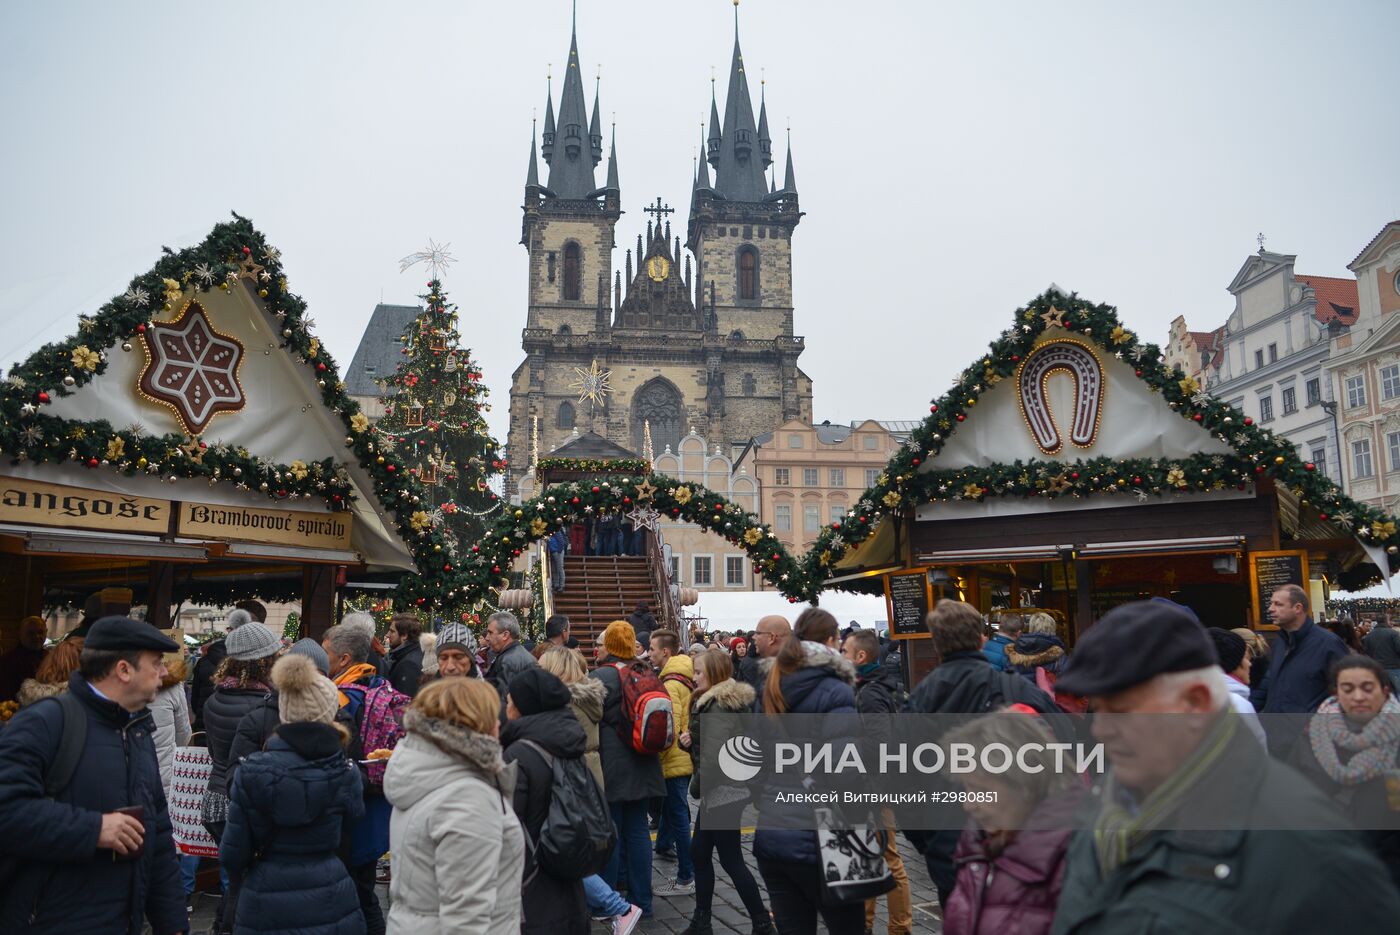 Открытие Рождественских ярмарок в Праге